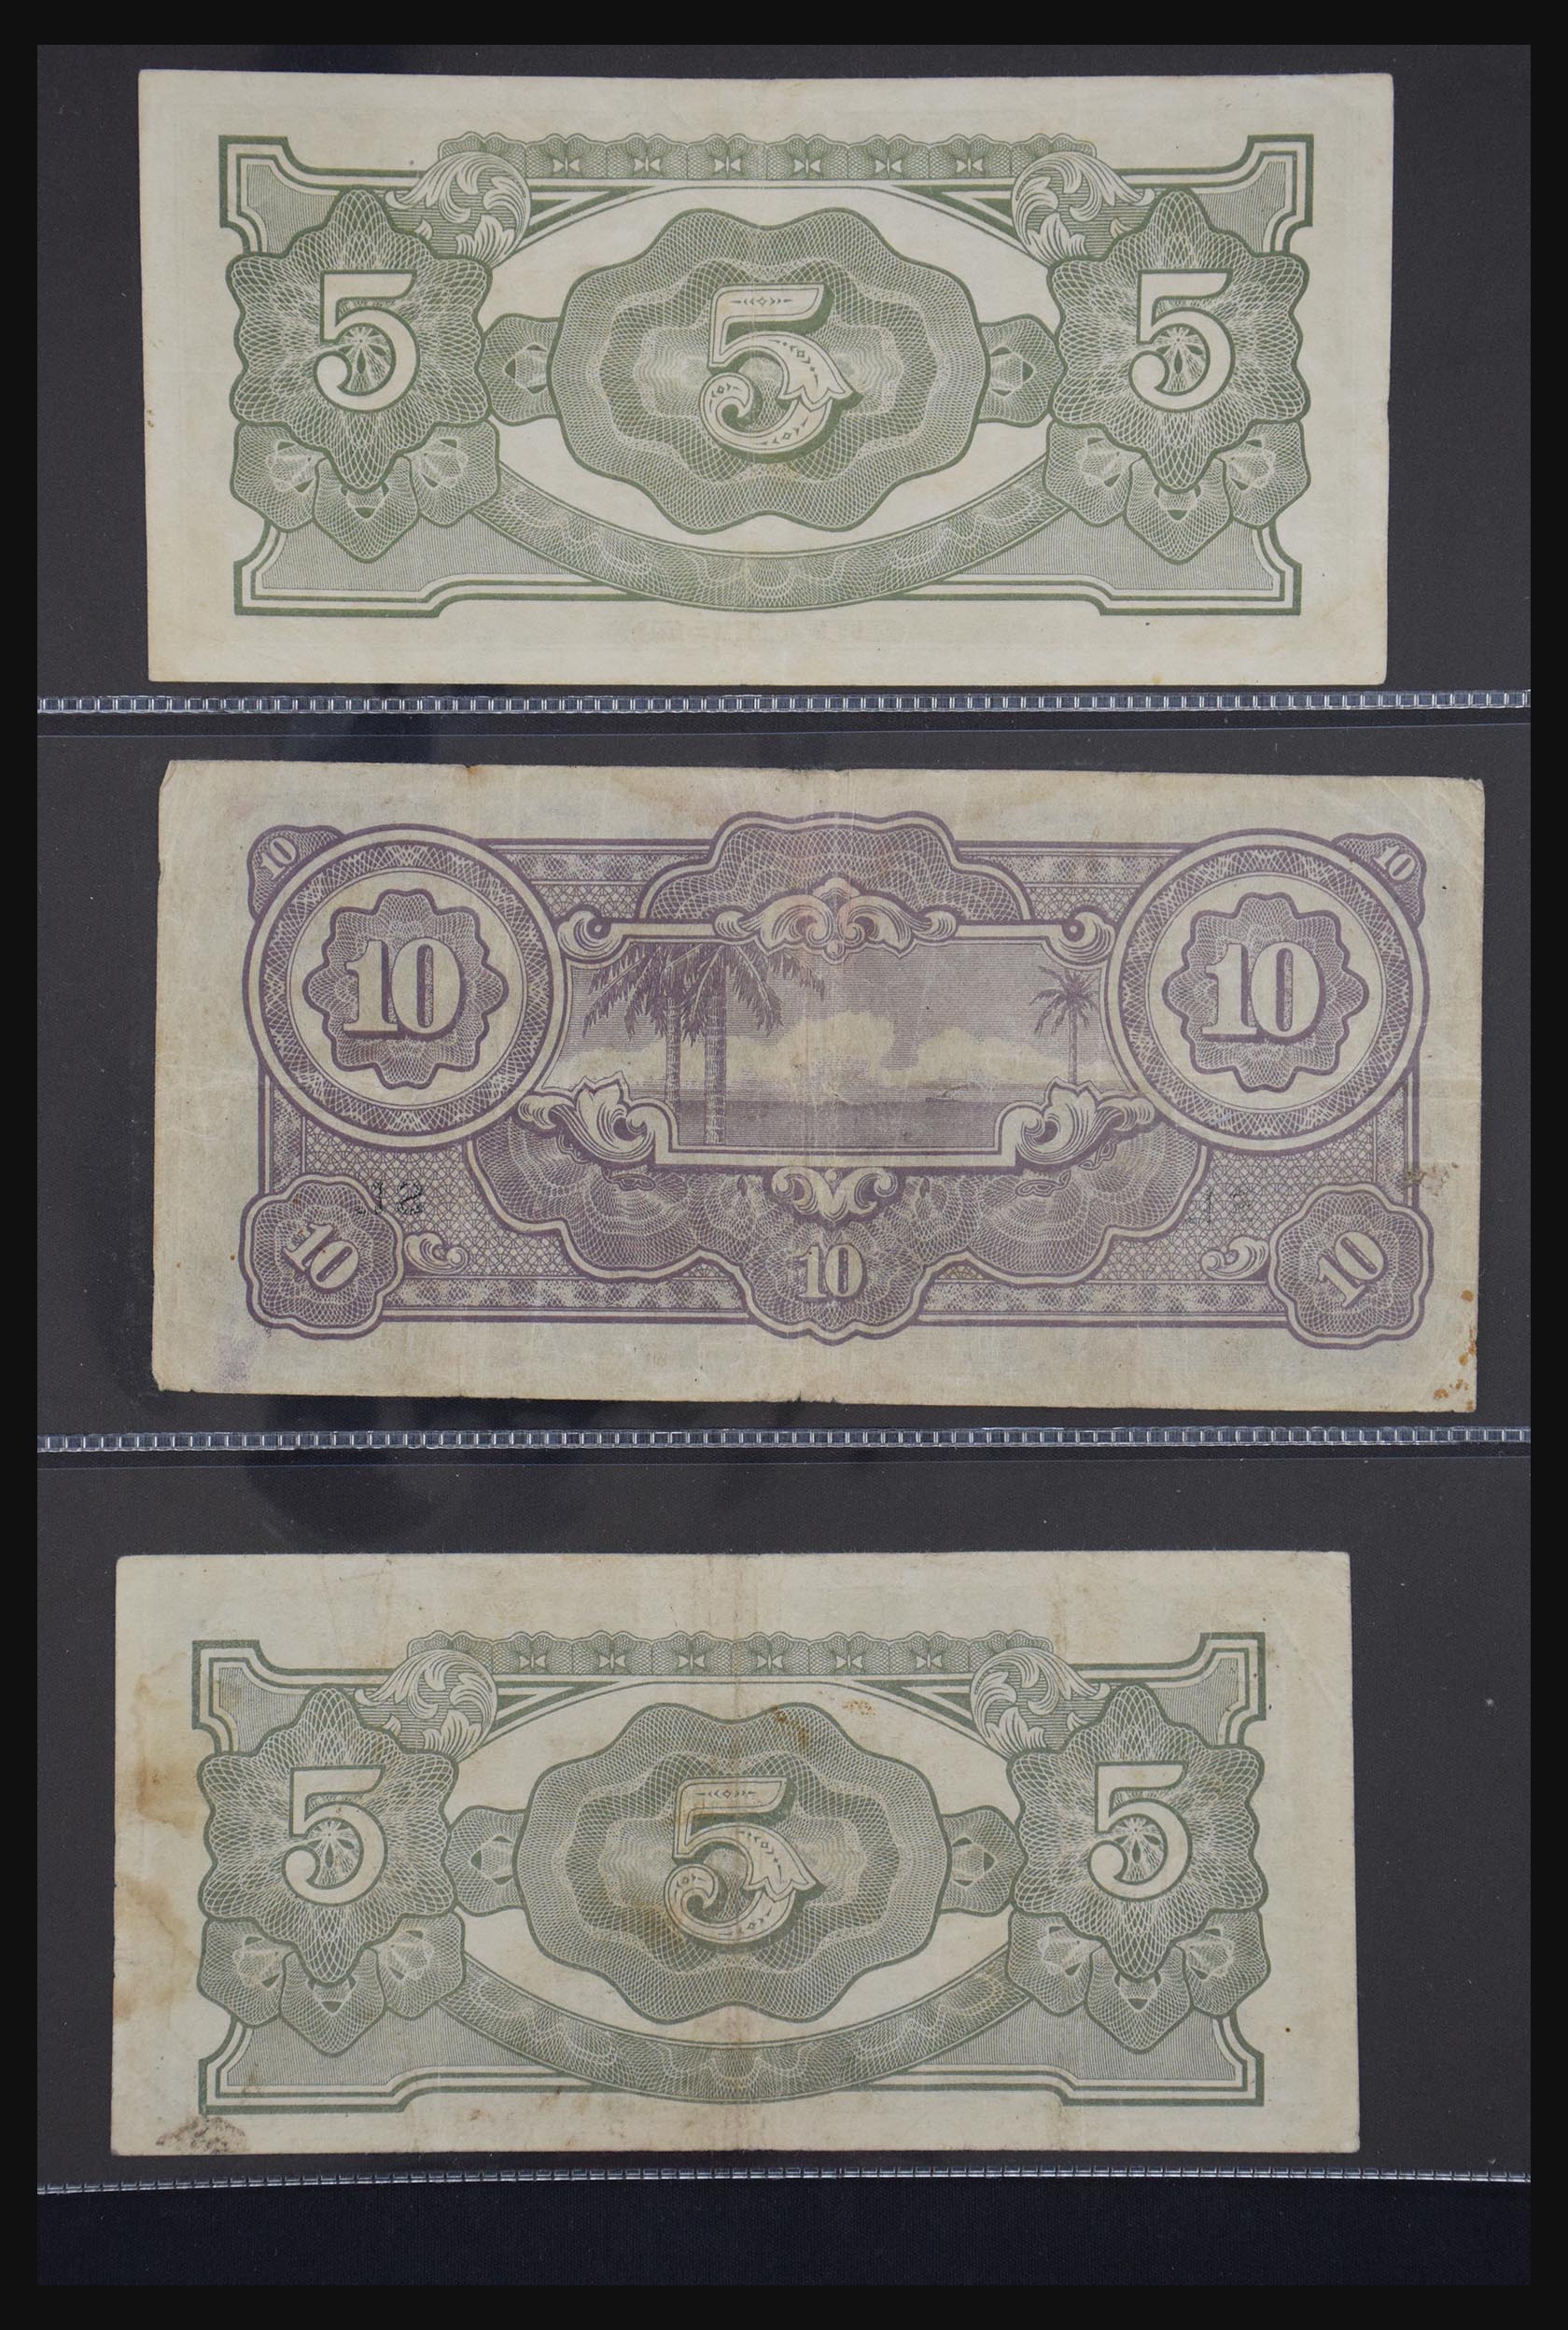 29404 062 - 29404 Netherlands banknotes 1924-1997.